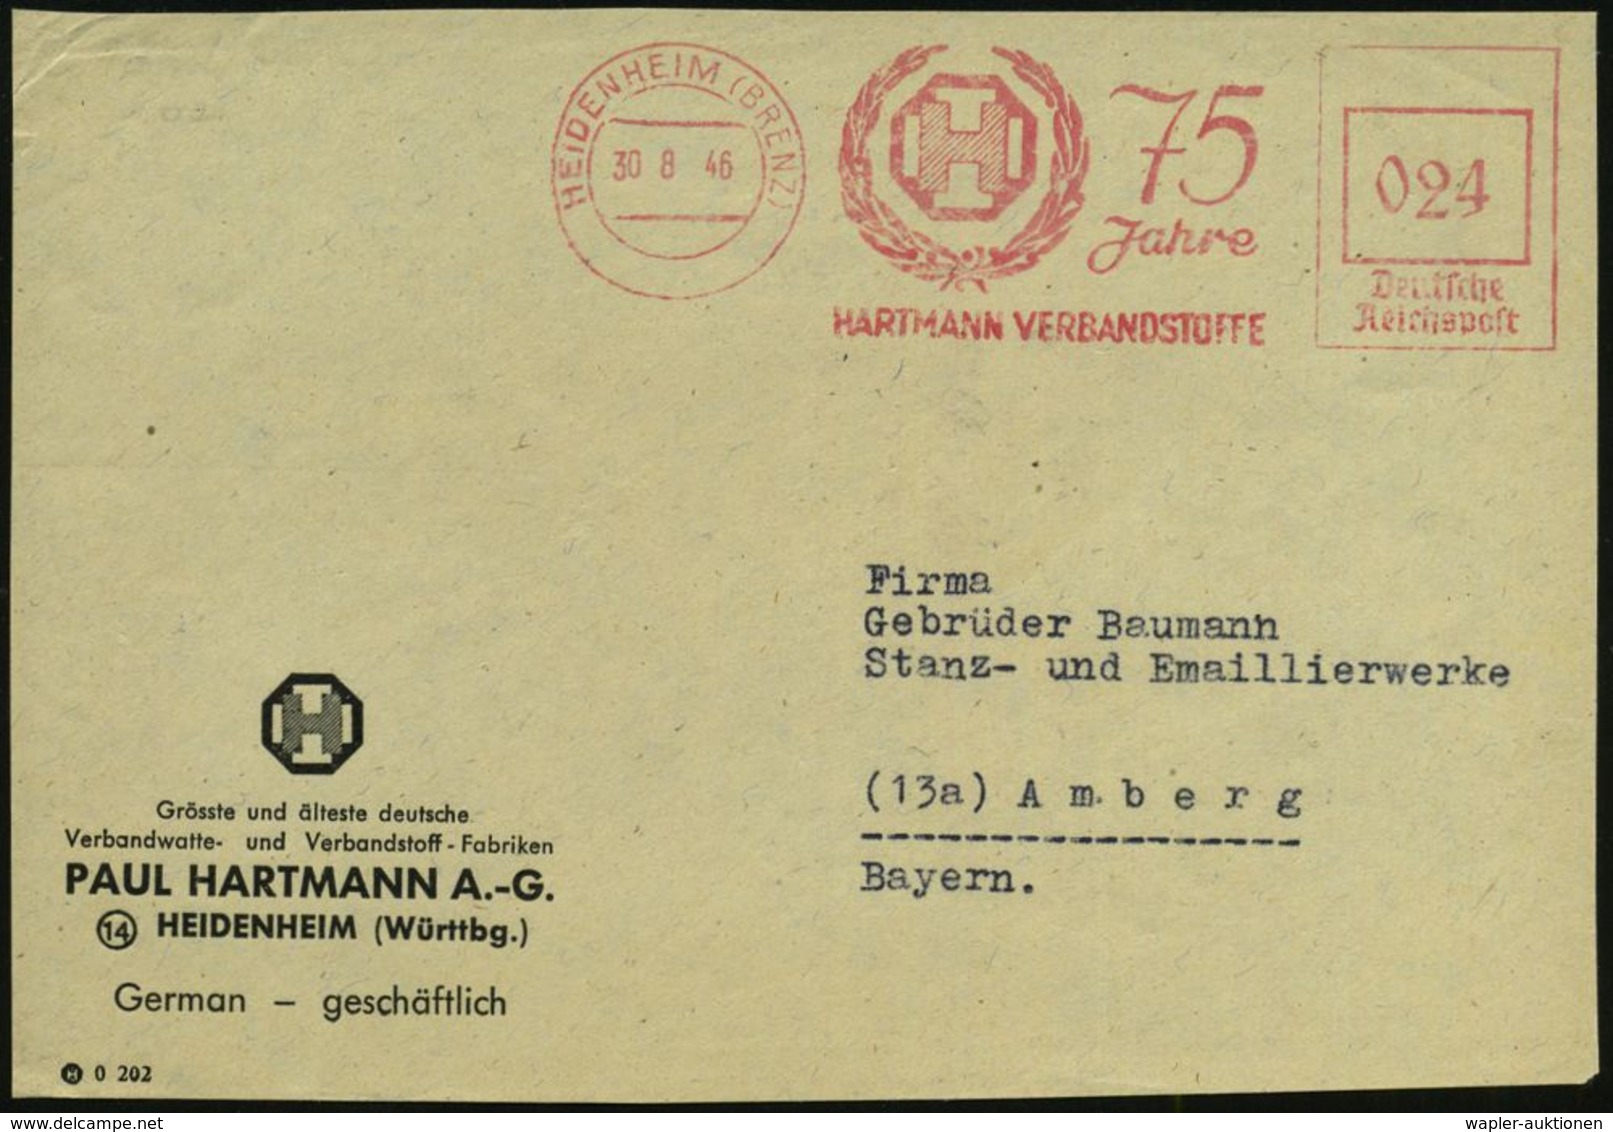 MEDIZINISCHE AUSRÜSTUNG & INSTRUMENTE : HEIDENHEIM (BRENZ)/ 75 Jahre/ HARTMANN VERBANDSSTOFFE 1946 (30.8.) Seltener, Apt - Medicine